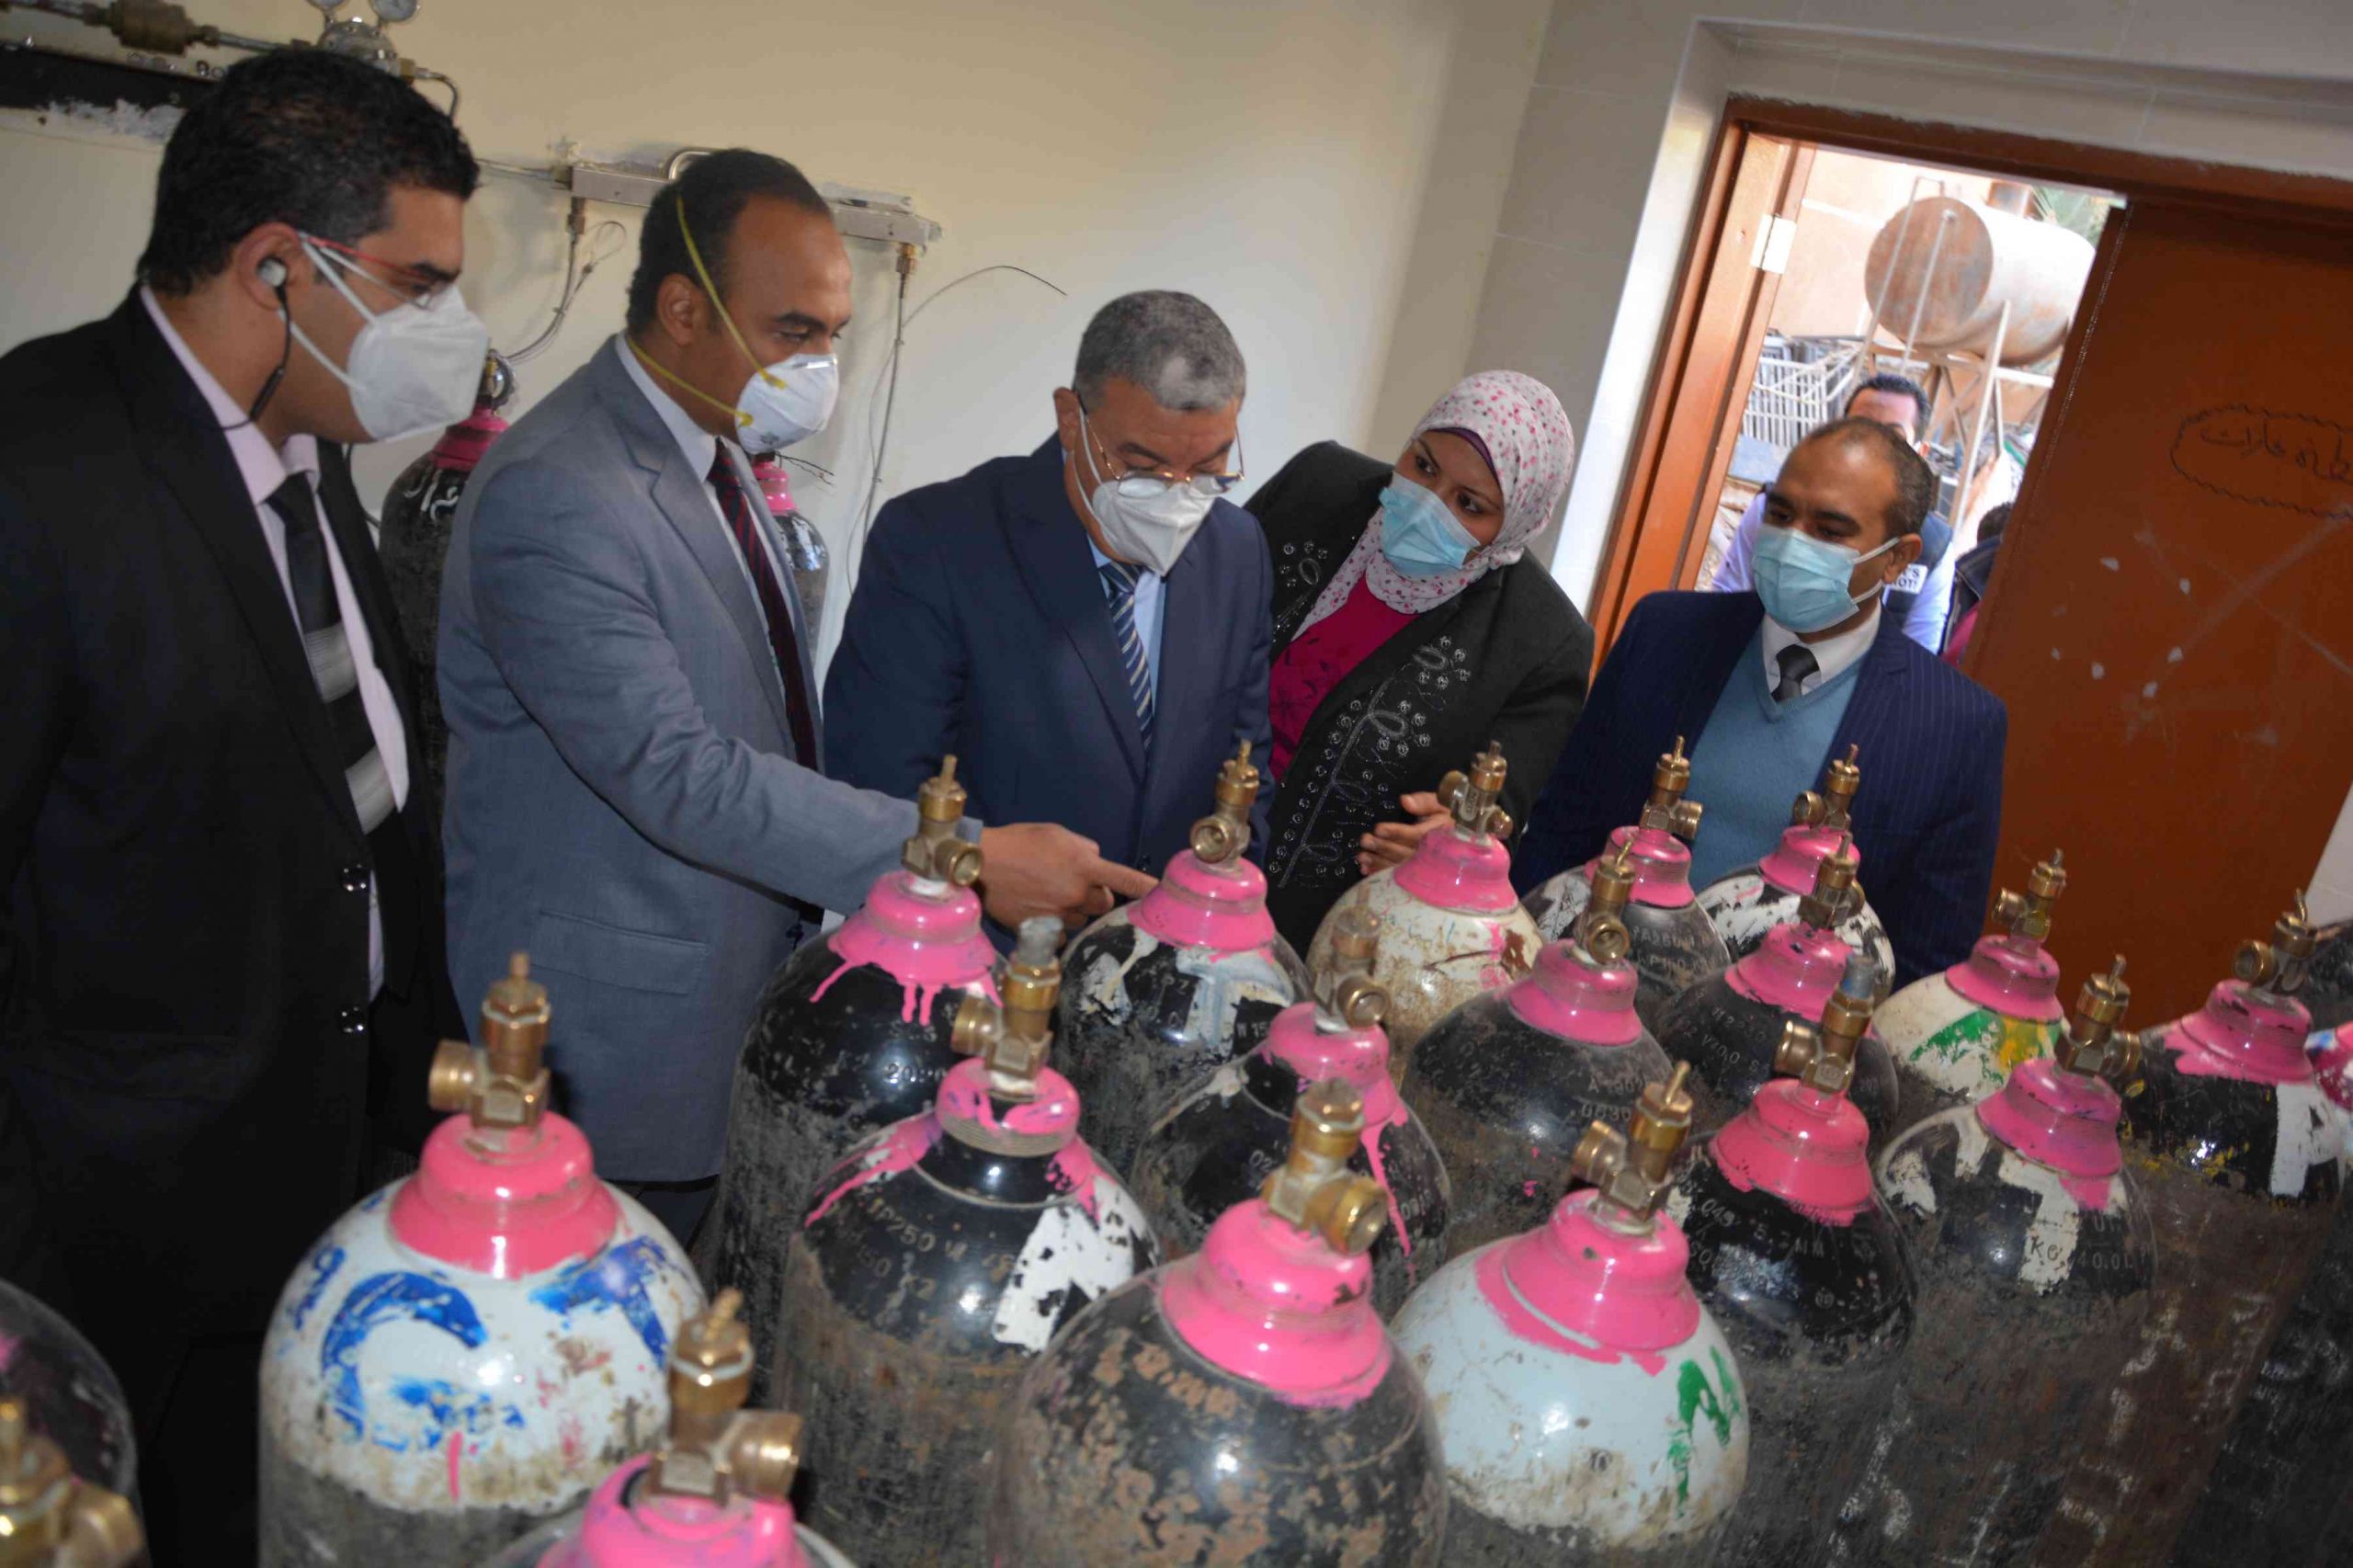   بالصور: الأورمان تزود عزل مستشفى حميات المنيا بأجهزة طبية